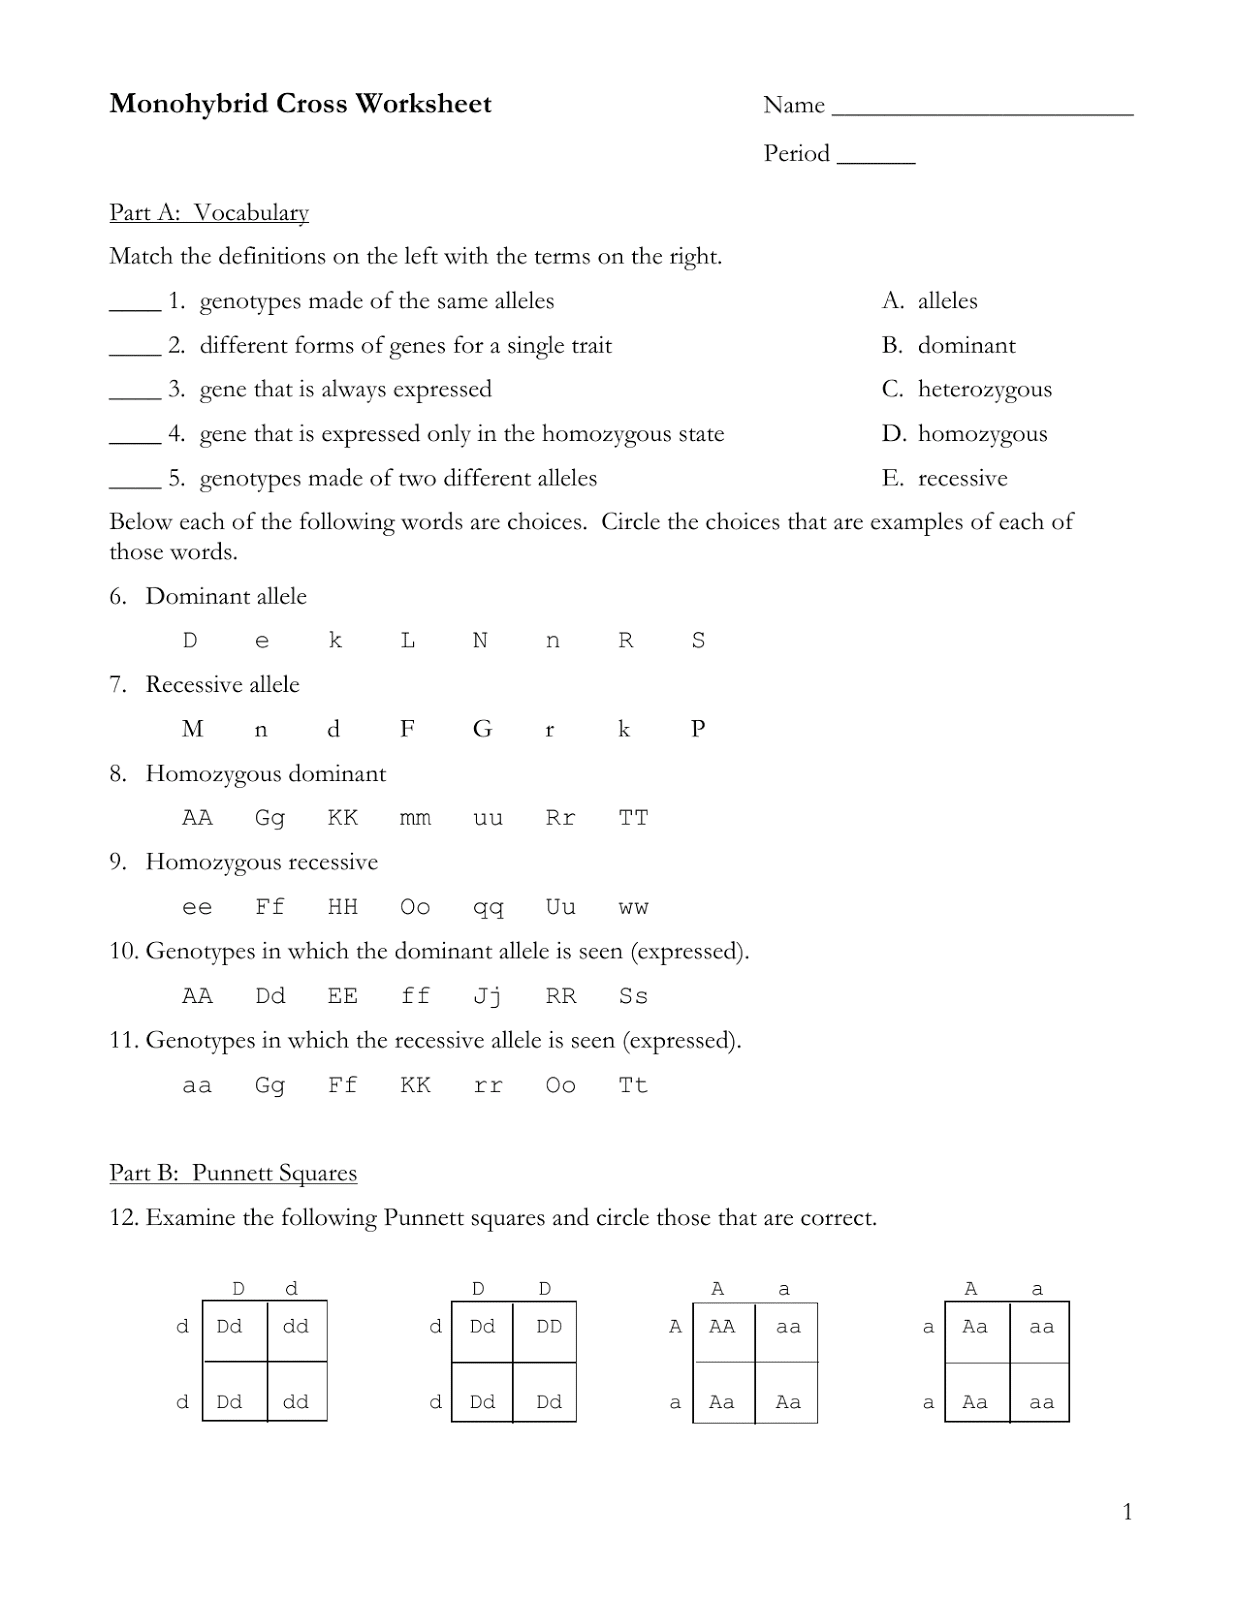 monohybrid cross worksheet For Monohybrid Cross Worksheet Answers